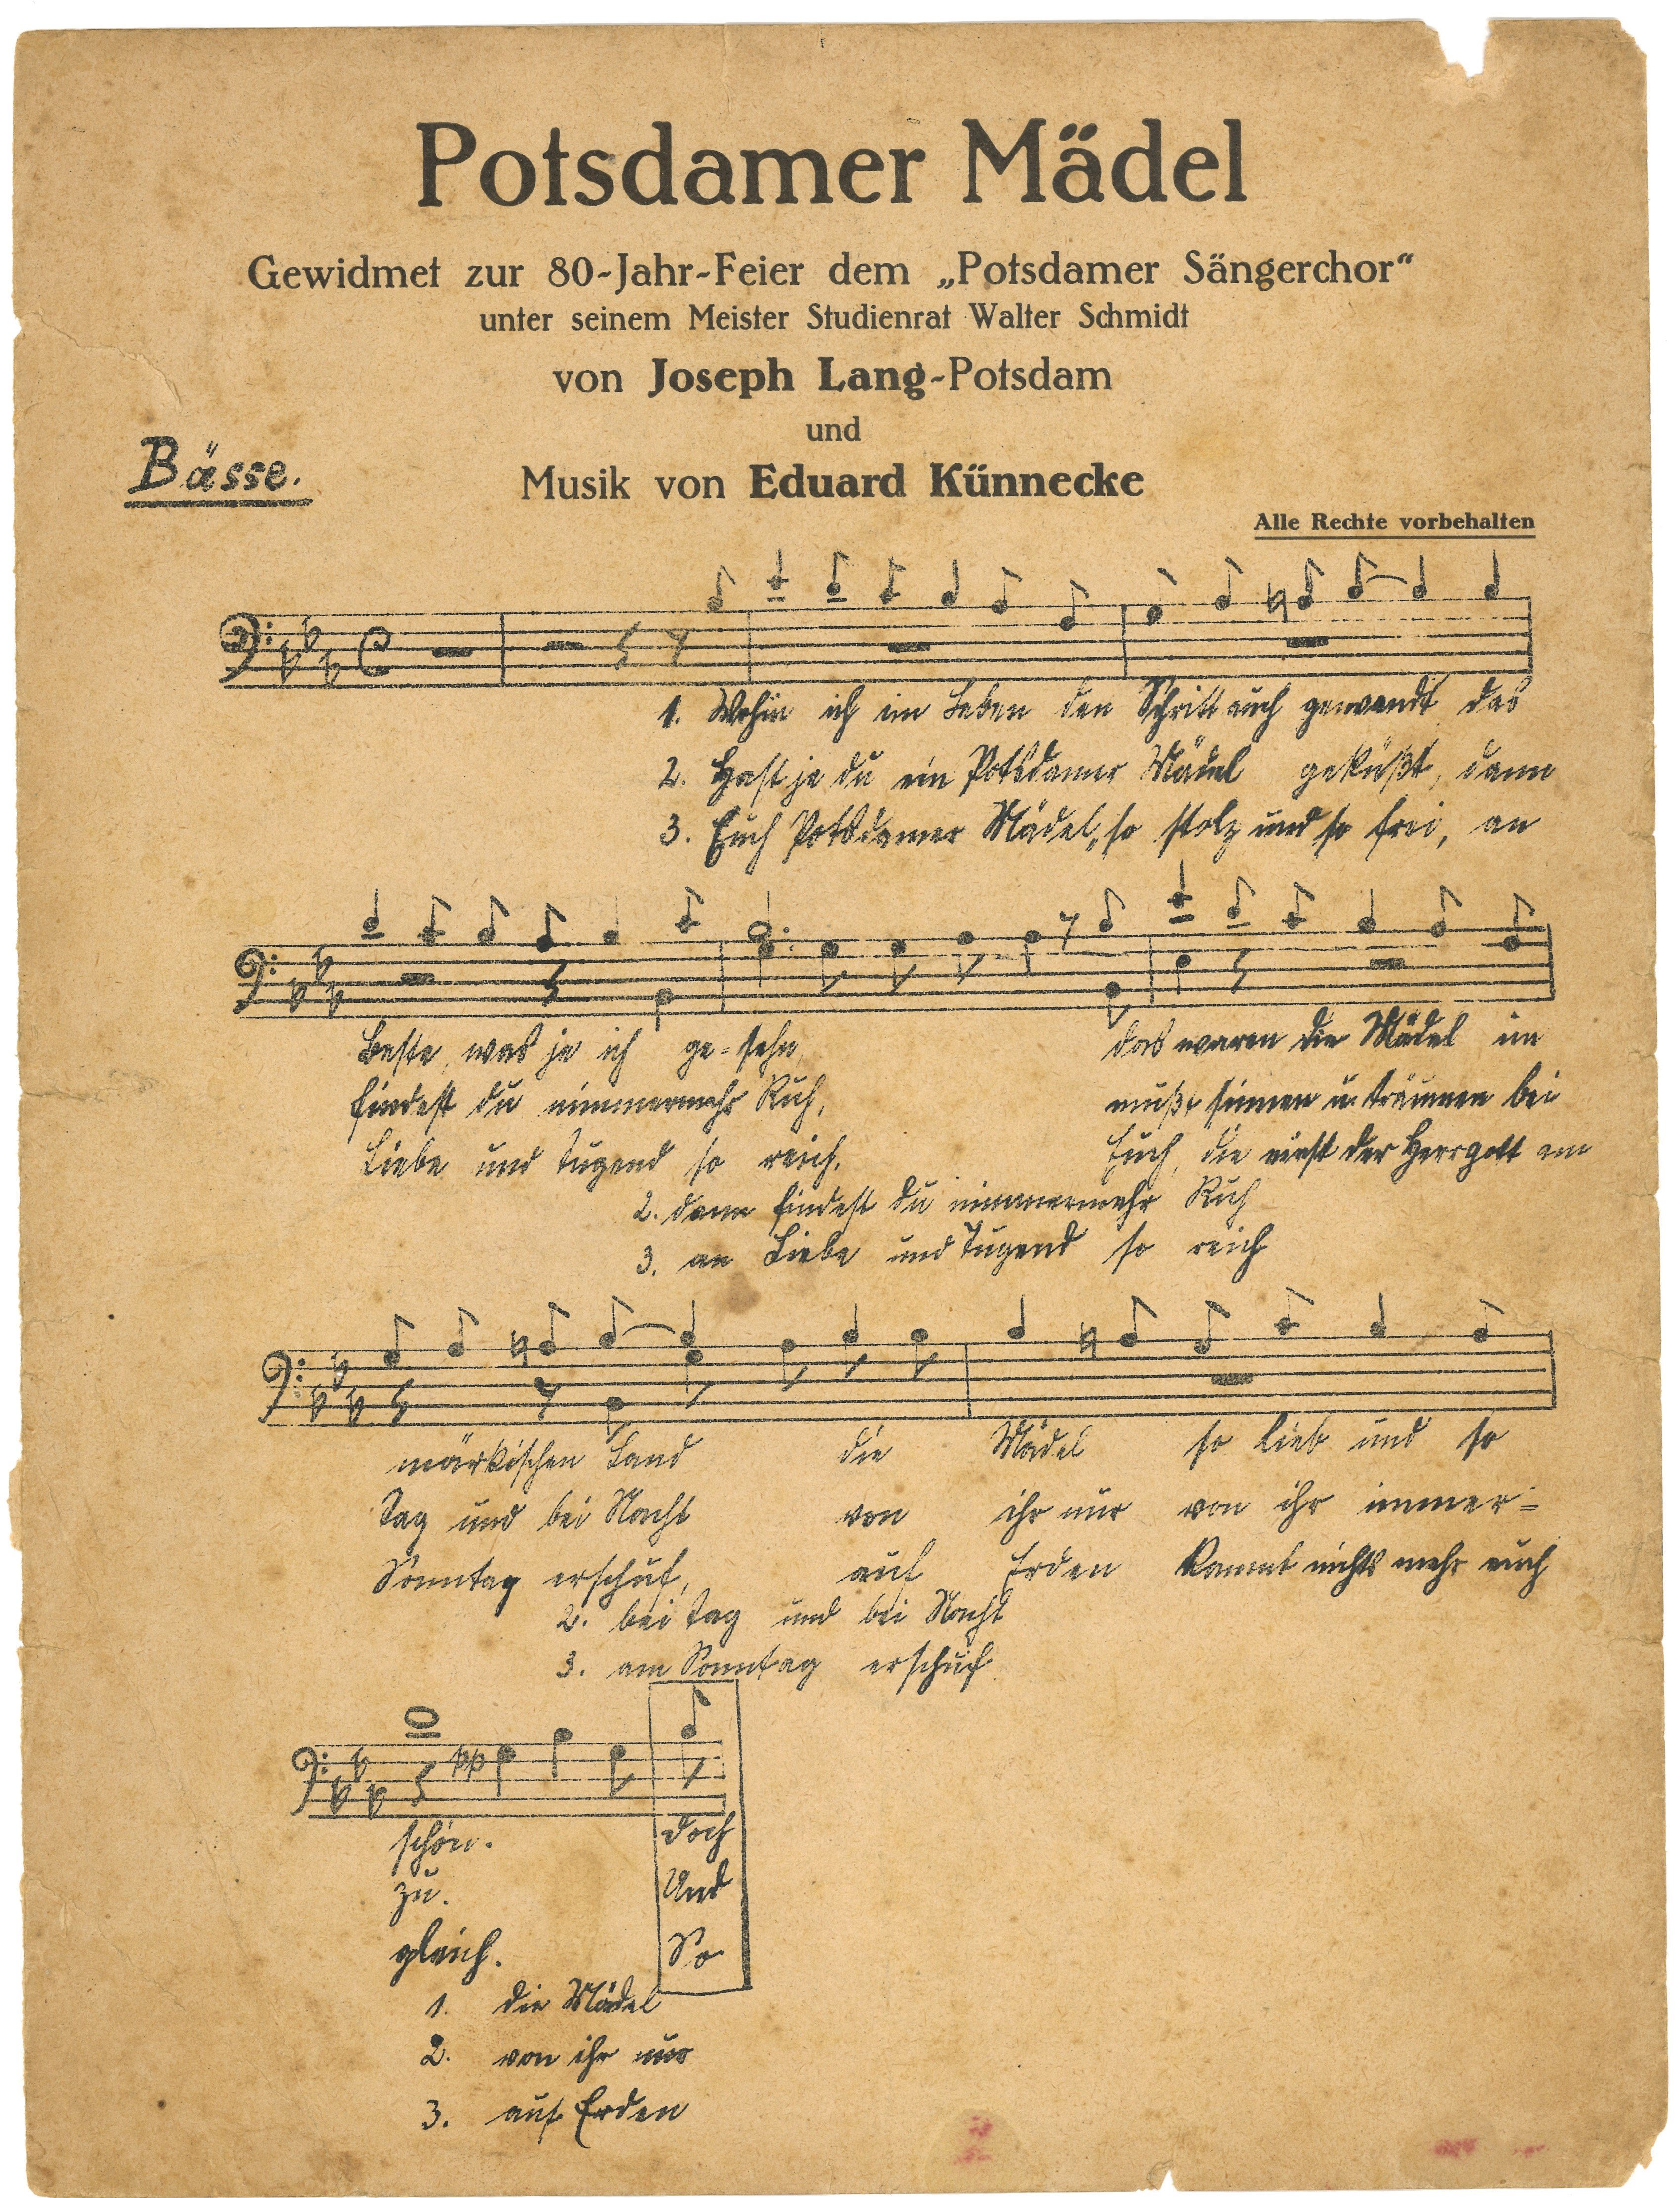 Notenblatt zum Lied "Potsdamer Mädel" für die 80-Jahr-Feier des Potsdamer Sängerchors 1928 (Landesgeschichtliche Vereinigung für die Mark Brandenburg e.V., Archiv CC BY)